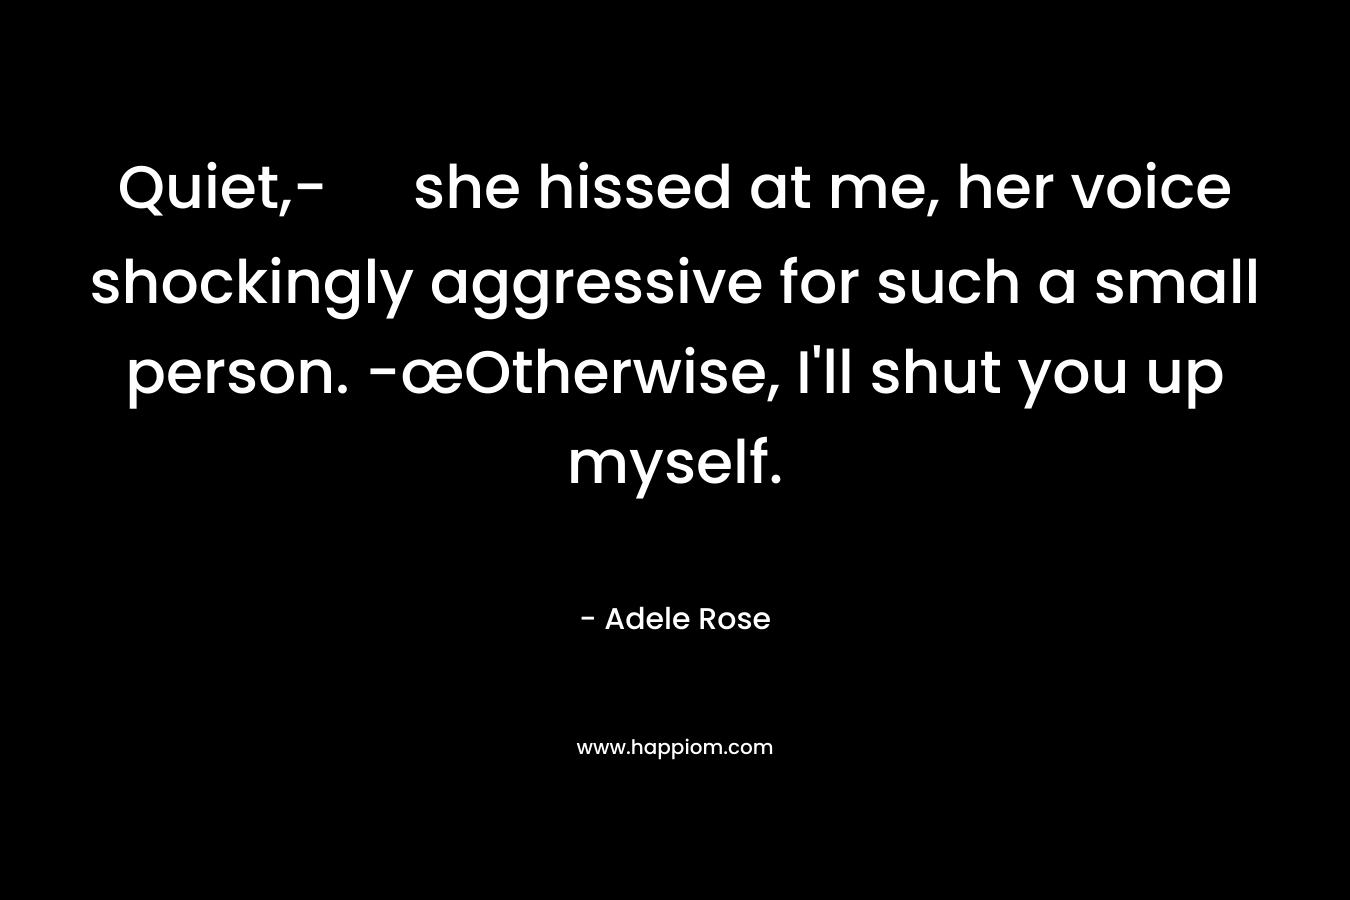 Quiet,- she hissed at me, her voice shockingly aggressive for such a small person. -œOtherwise, I'll shut you up myself.